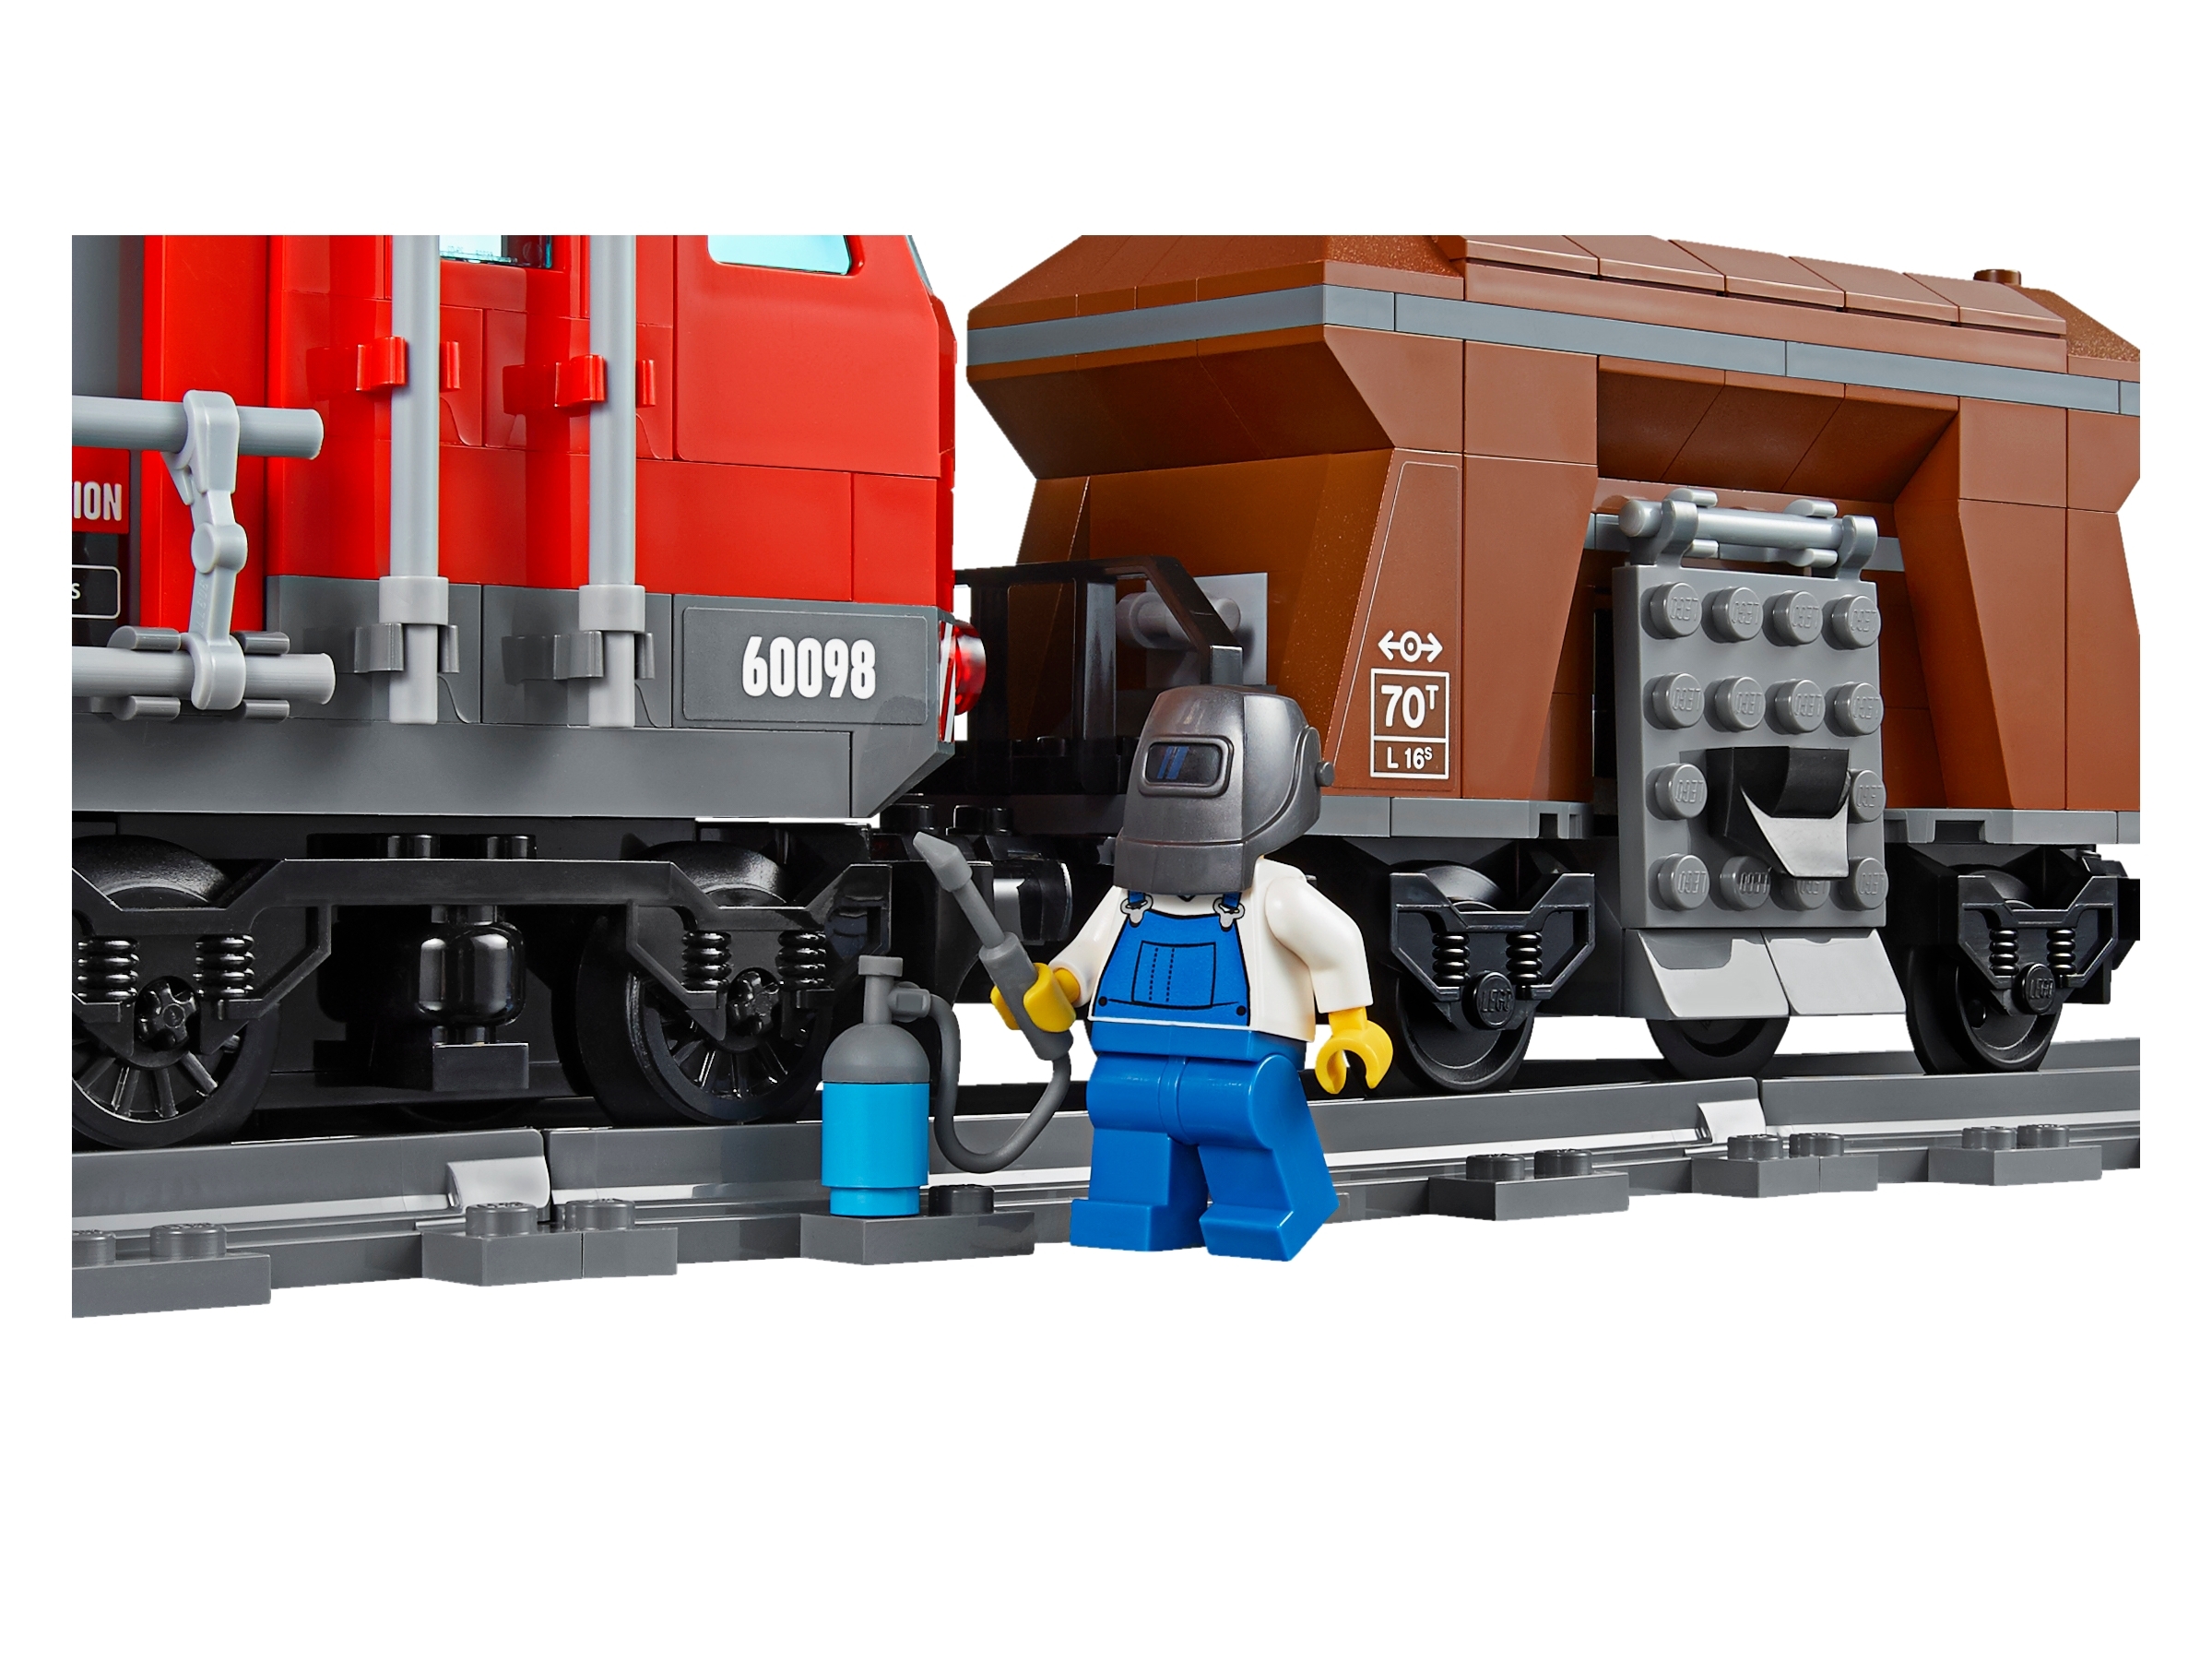 Lego 60098 Tren de Mercancías Pesadas. 